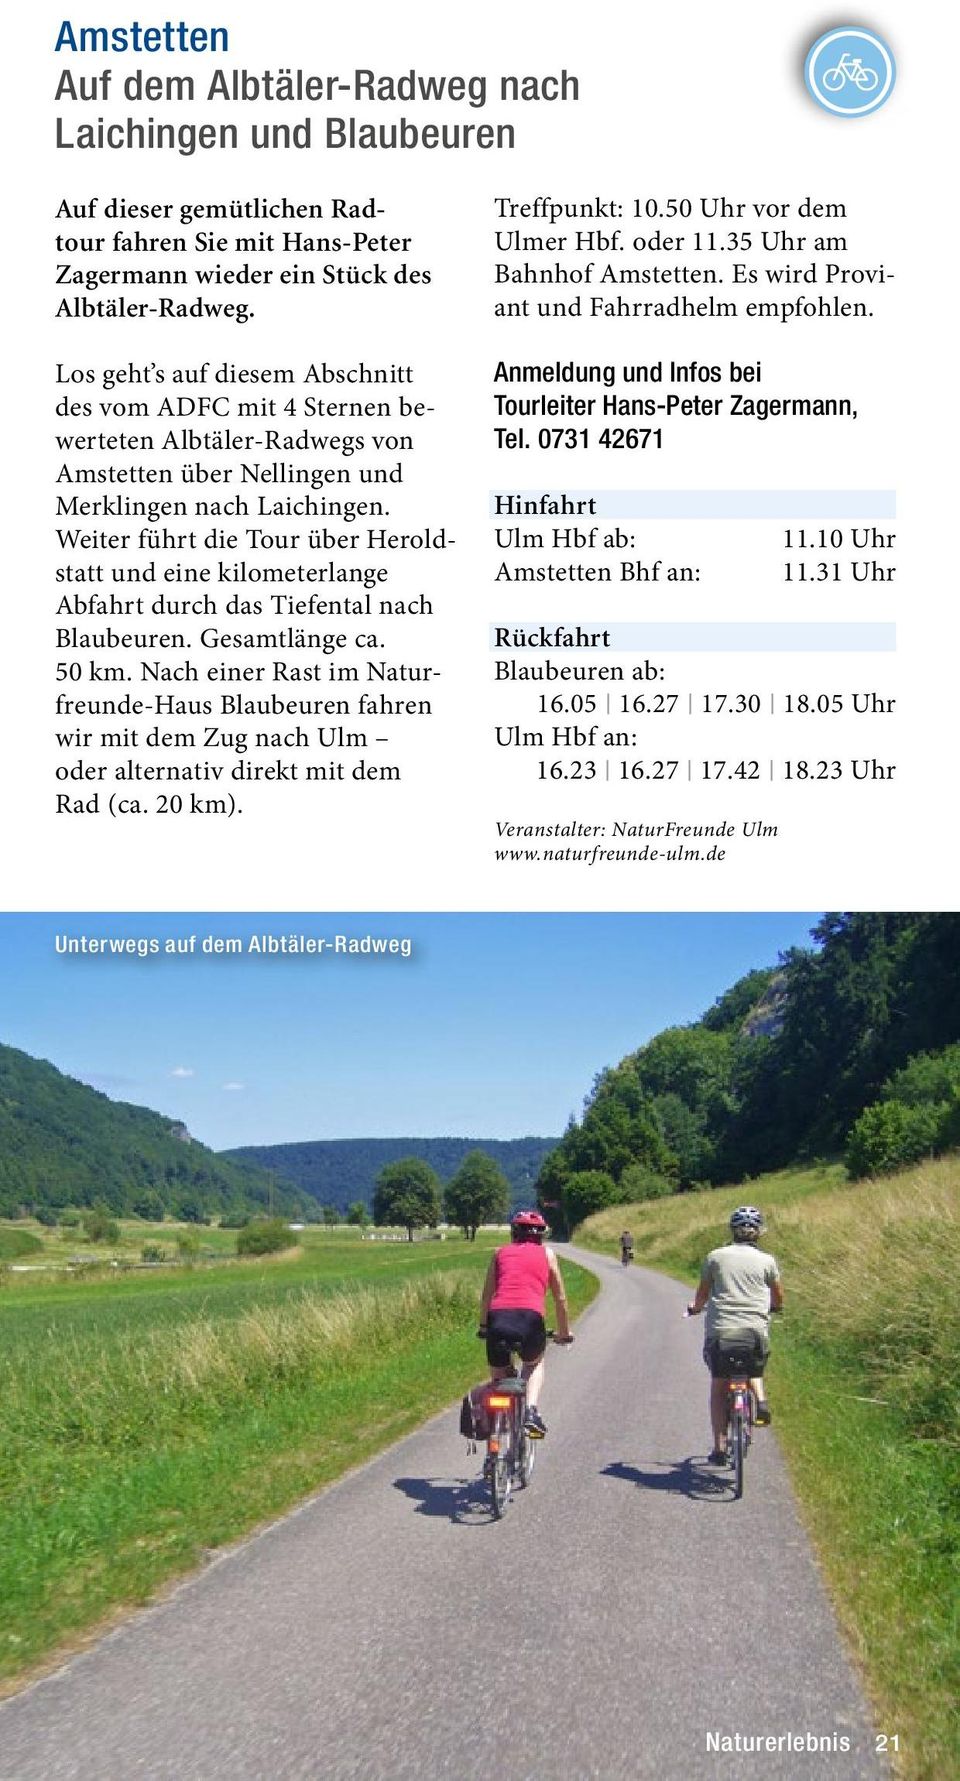 Weiter führt die Tour über Heroldstatt und eine kilometerlange Abfahrt durch das Tiefental nach Blaubeuren. Gesamtlänge ca. 50 km.